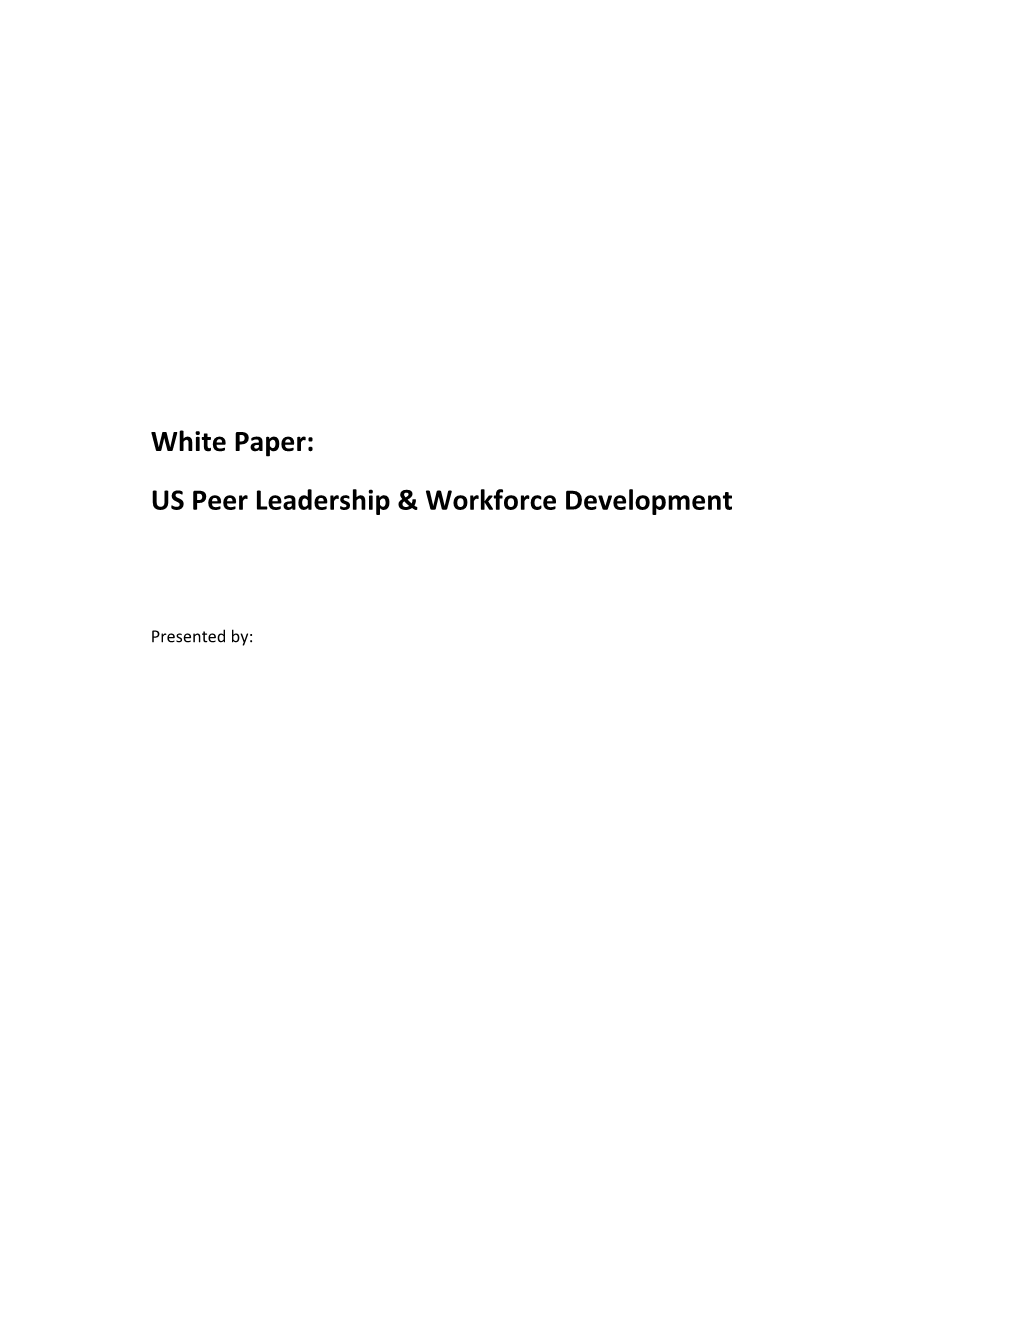 Peer Workforce and Development